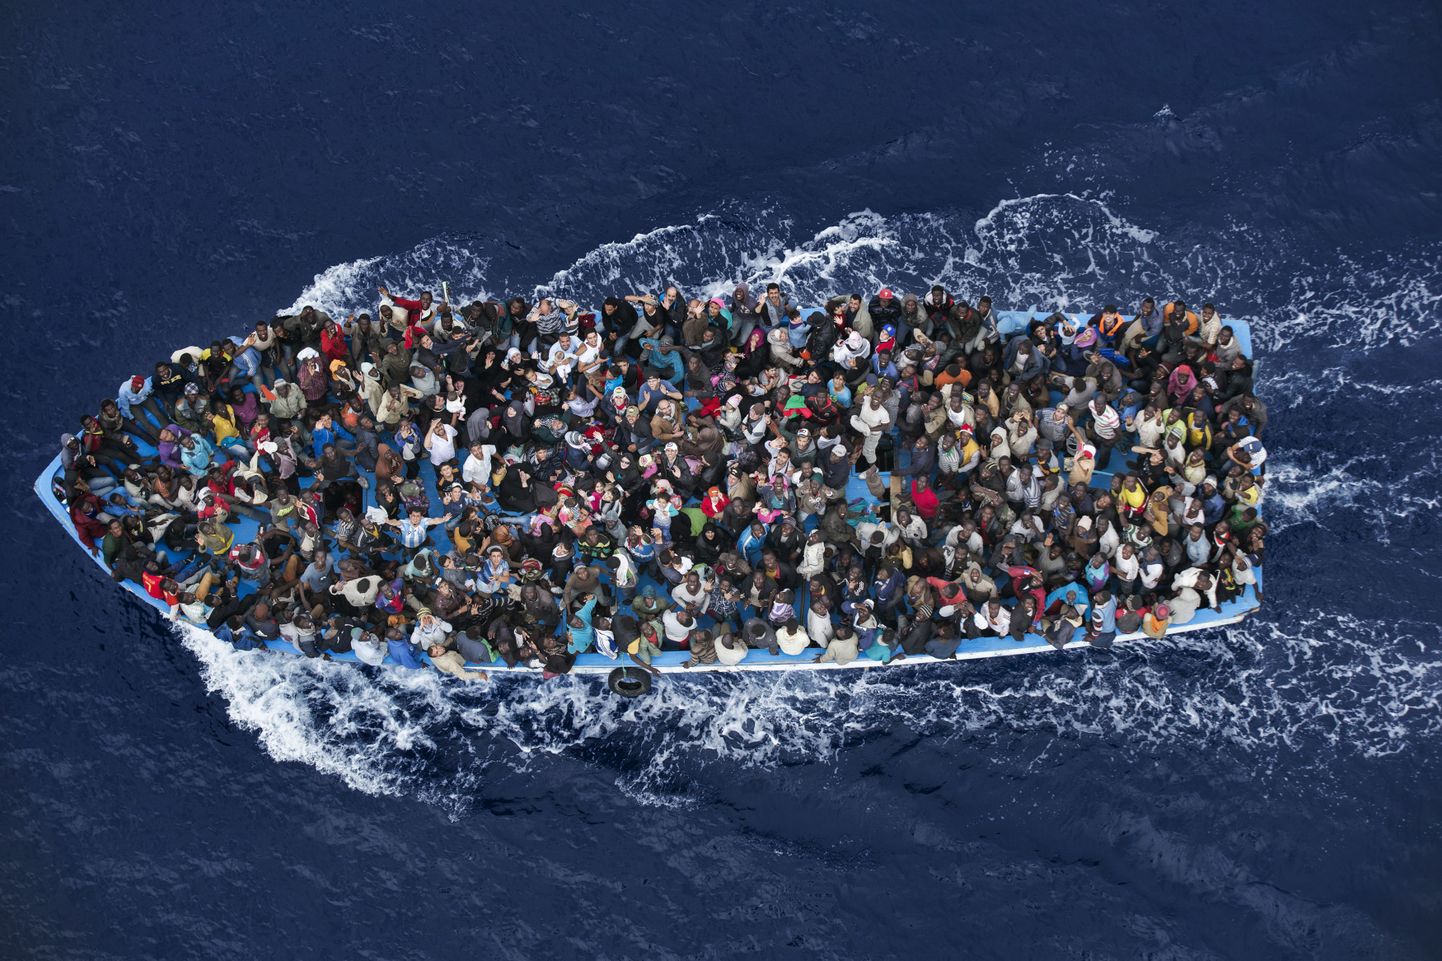 Itaalia fotograaf Massimo Sestini, teine koht uudisfoto kategoorias. Merehädas paadipõgenikud Liibüa ranniku lähistel.